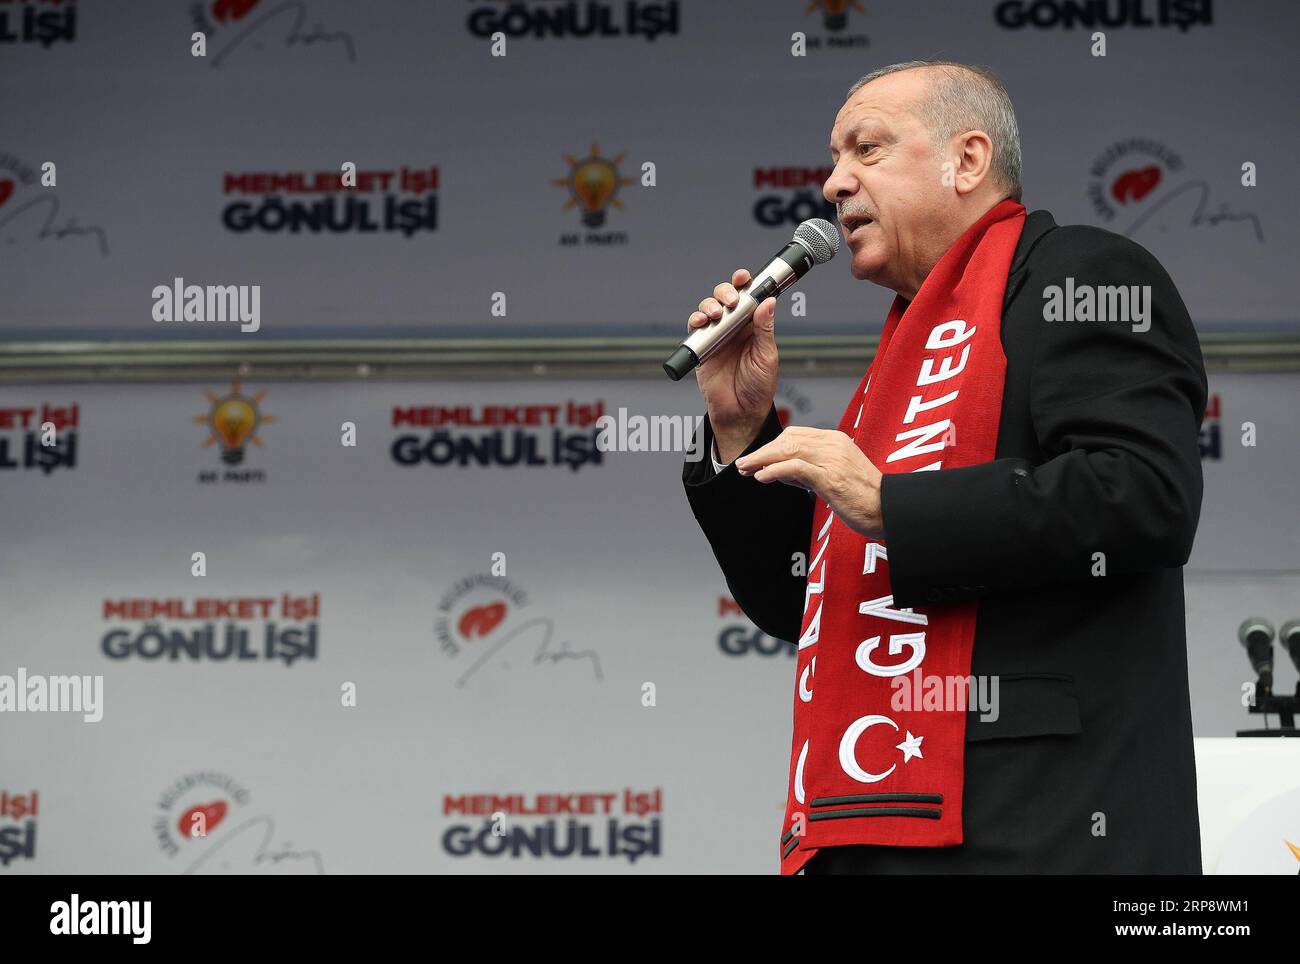 (190316) -- ANKARA, 16 marzo 2019 (Xinhua) -- il presidente turco Recep Tayyip Erdogan tiene un discorso in occasione di una manifestazione del partito turco per la giustizia e lo sviluppo (AKP) a Gaziantep, in Turchia, il 15 marzo 2019. Il presidente turco Recep Tayyip Erdogan ha condannato con forza gli attacchi di venerdì a due moschee nella città neozelandese di Christchurch. (Xinhua/Palazzo presidenziale turco) TURCHIA-GAZIANTEP-PRESIDENTE-DISCORSO-RALLY PUBLICATIONxNOTxINxCHN Foto Stock